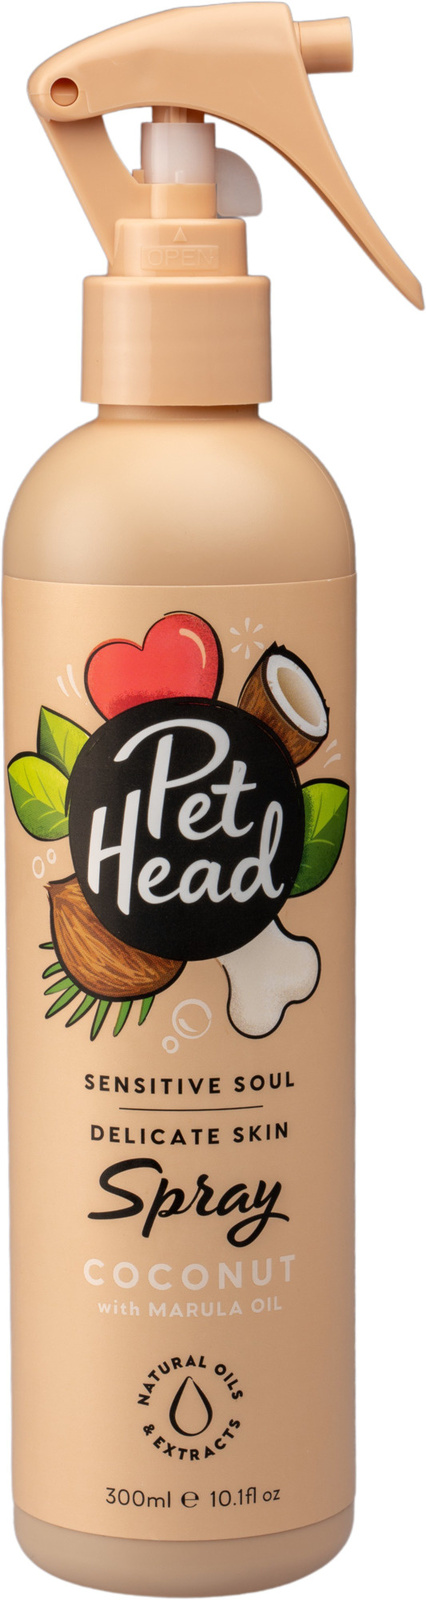 цена Pet Head Pet Head спрей для очищения шерсти собак Пушистый привереда с ароматом кокоса (303 г)